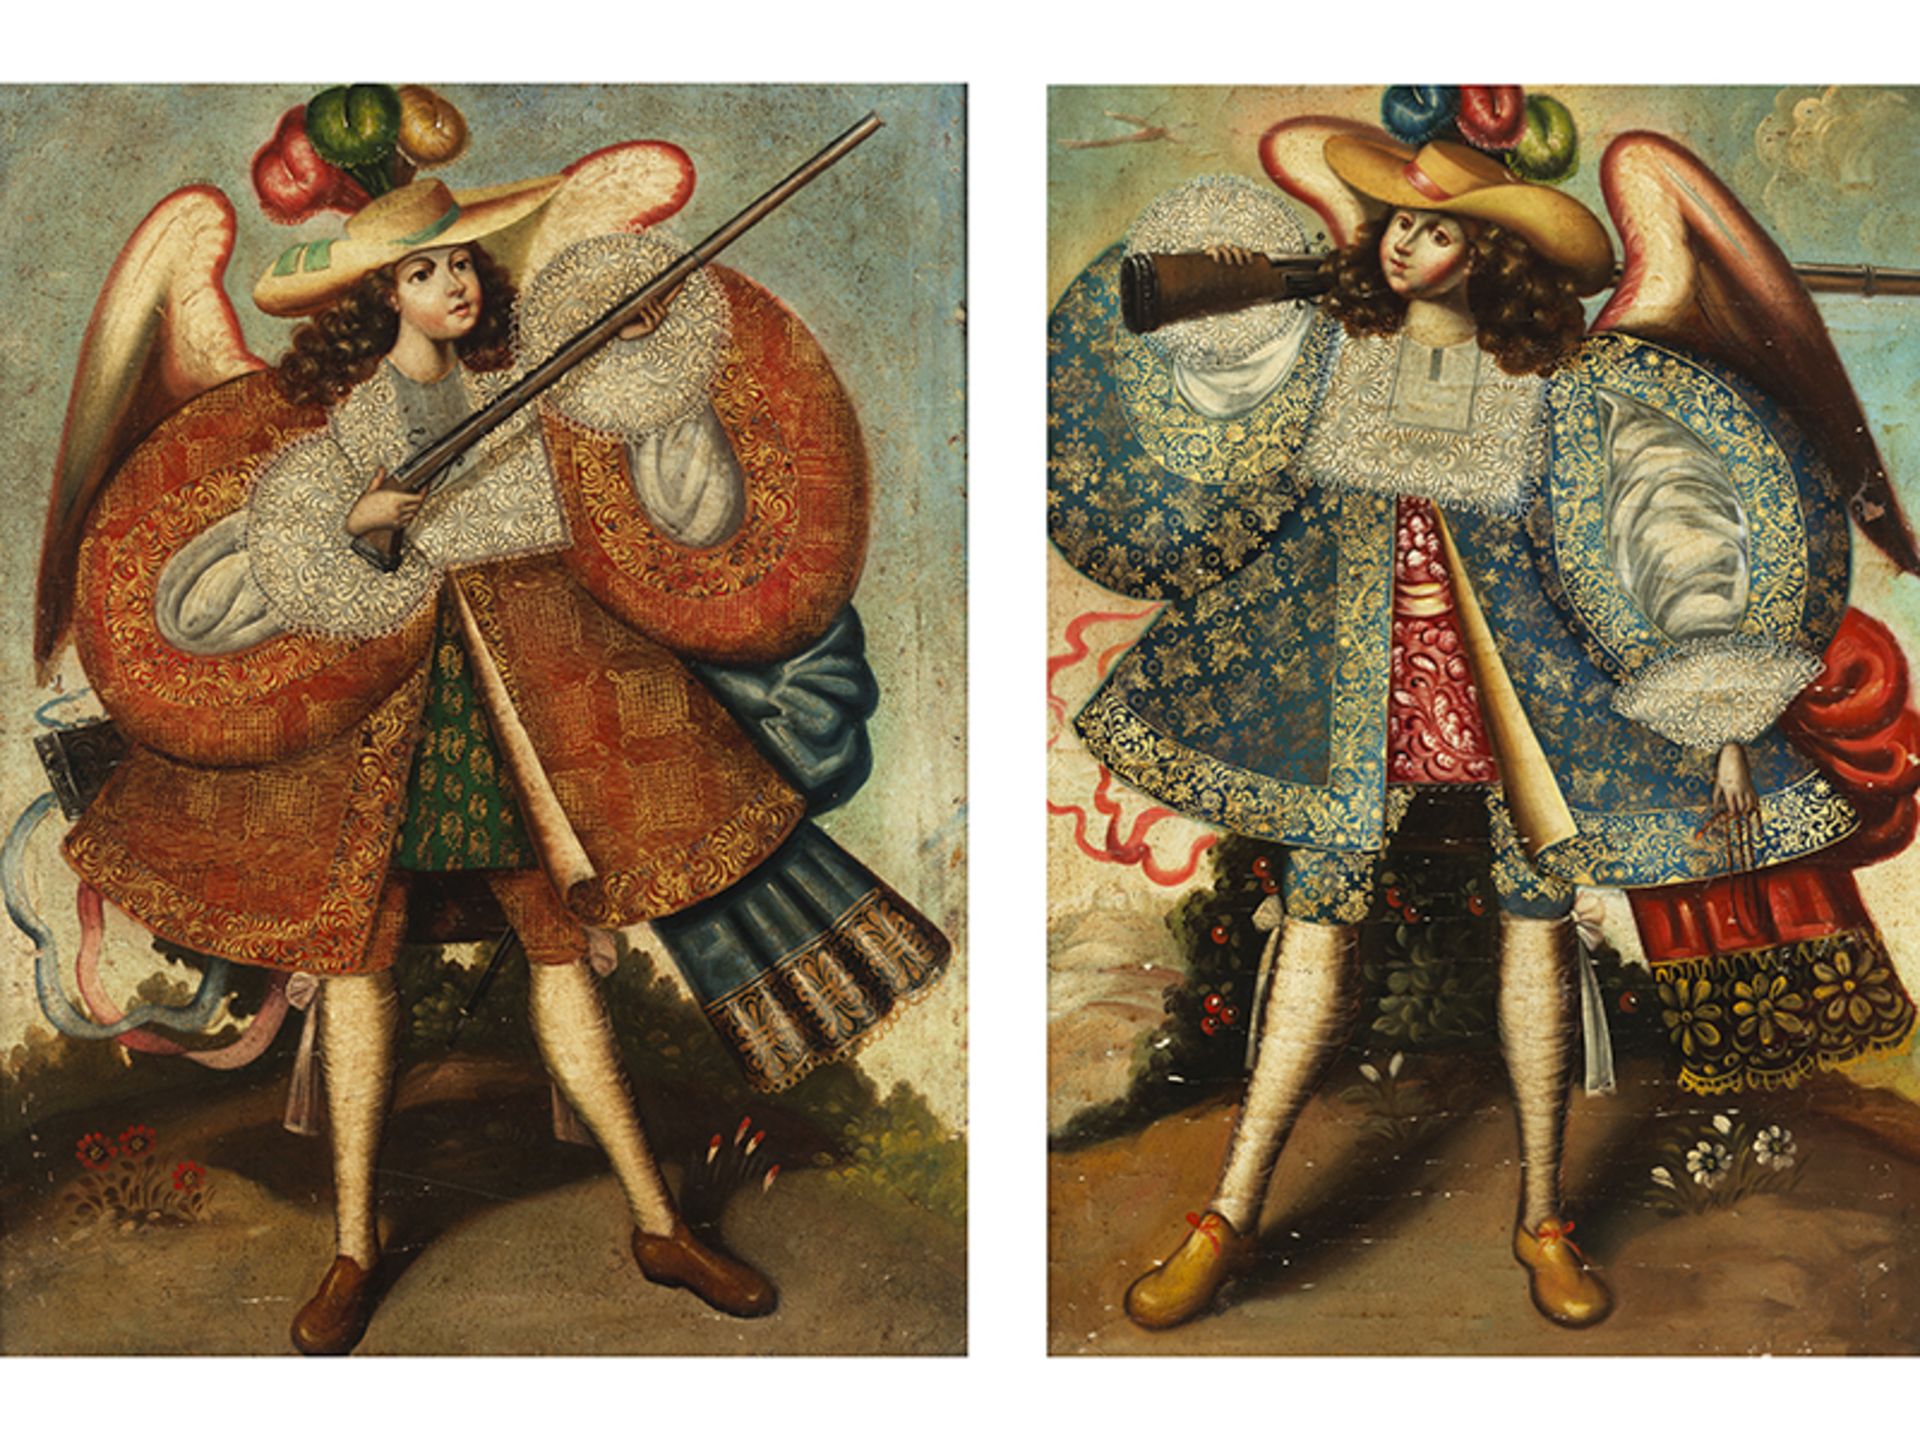 Maler des 19. Jahrhunderts, wohl der Cuzco-SchuleGemäldepaar Öl auf Leinwand. 90 x 70 cm und 90